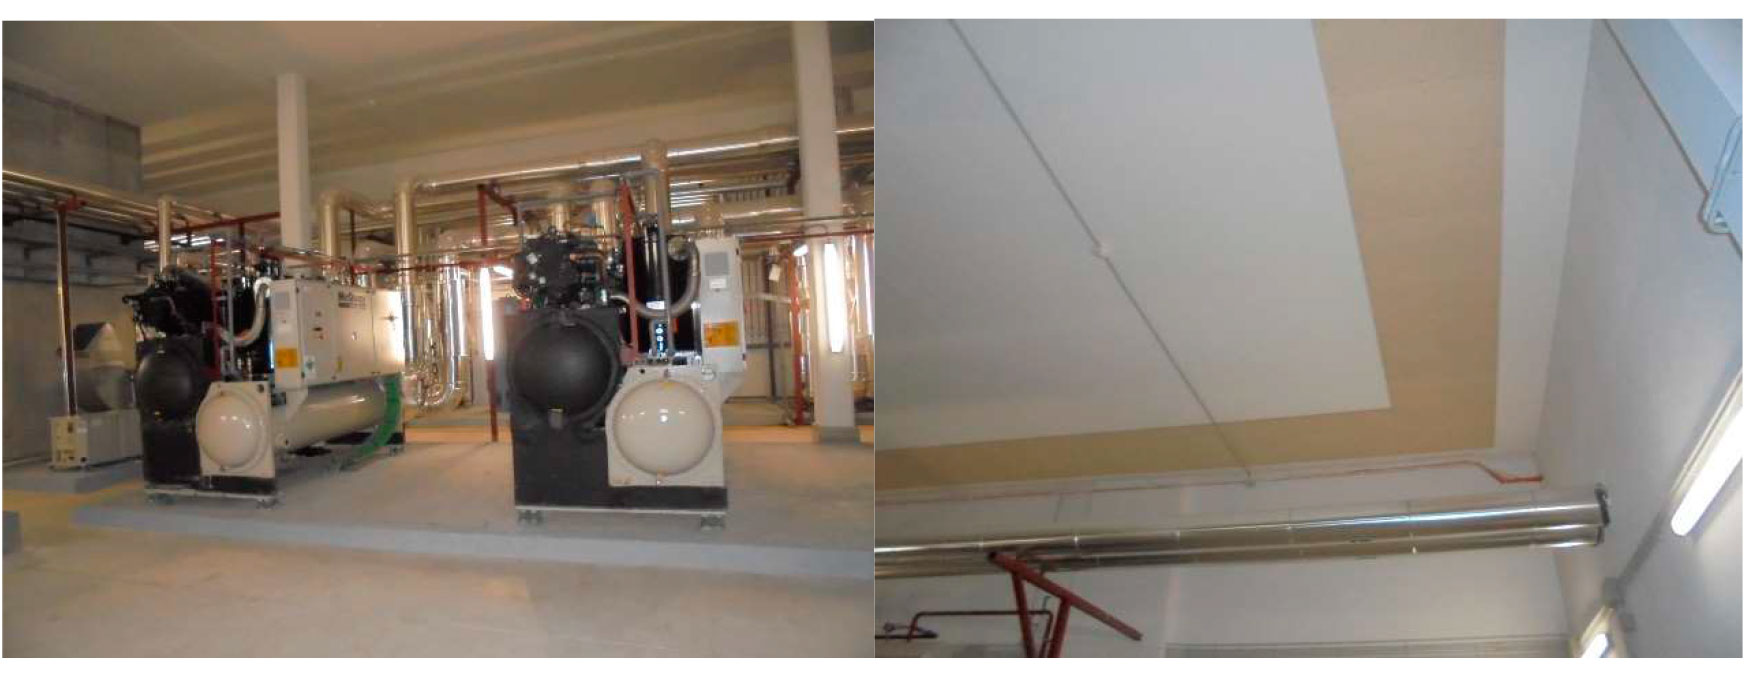 Sala de instalaciones de refrigeracin Nivel -2 en Hospital Marqus de Valdecilla Fase III y tratamiento acstico de insonorizacin de techos y...